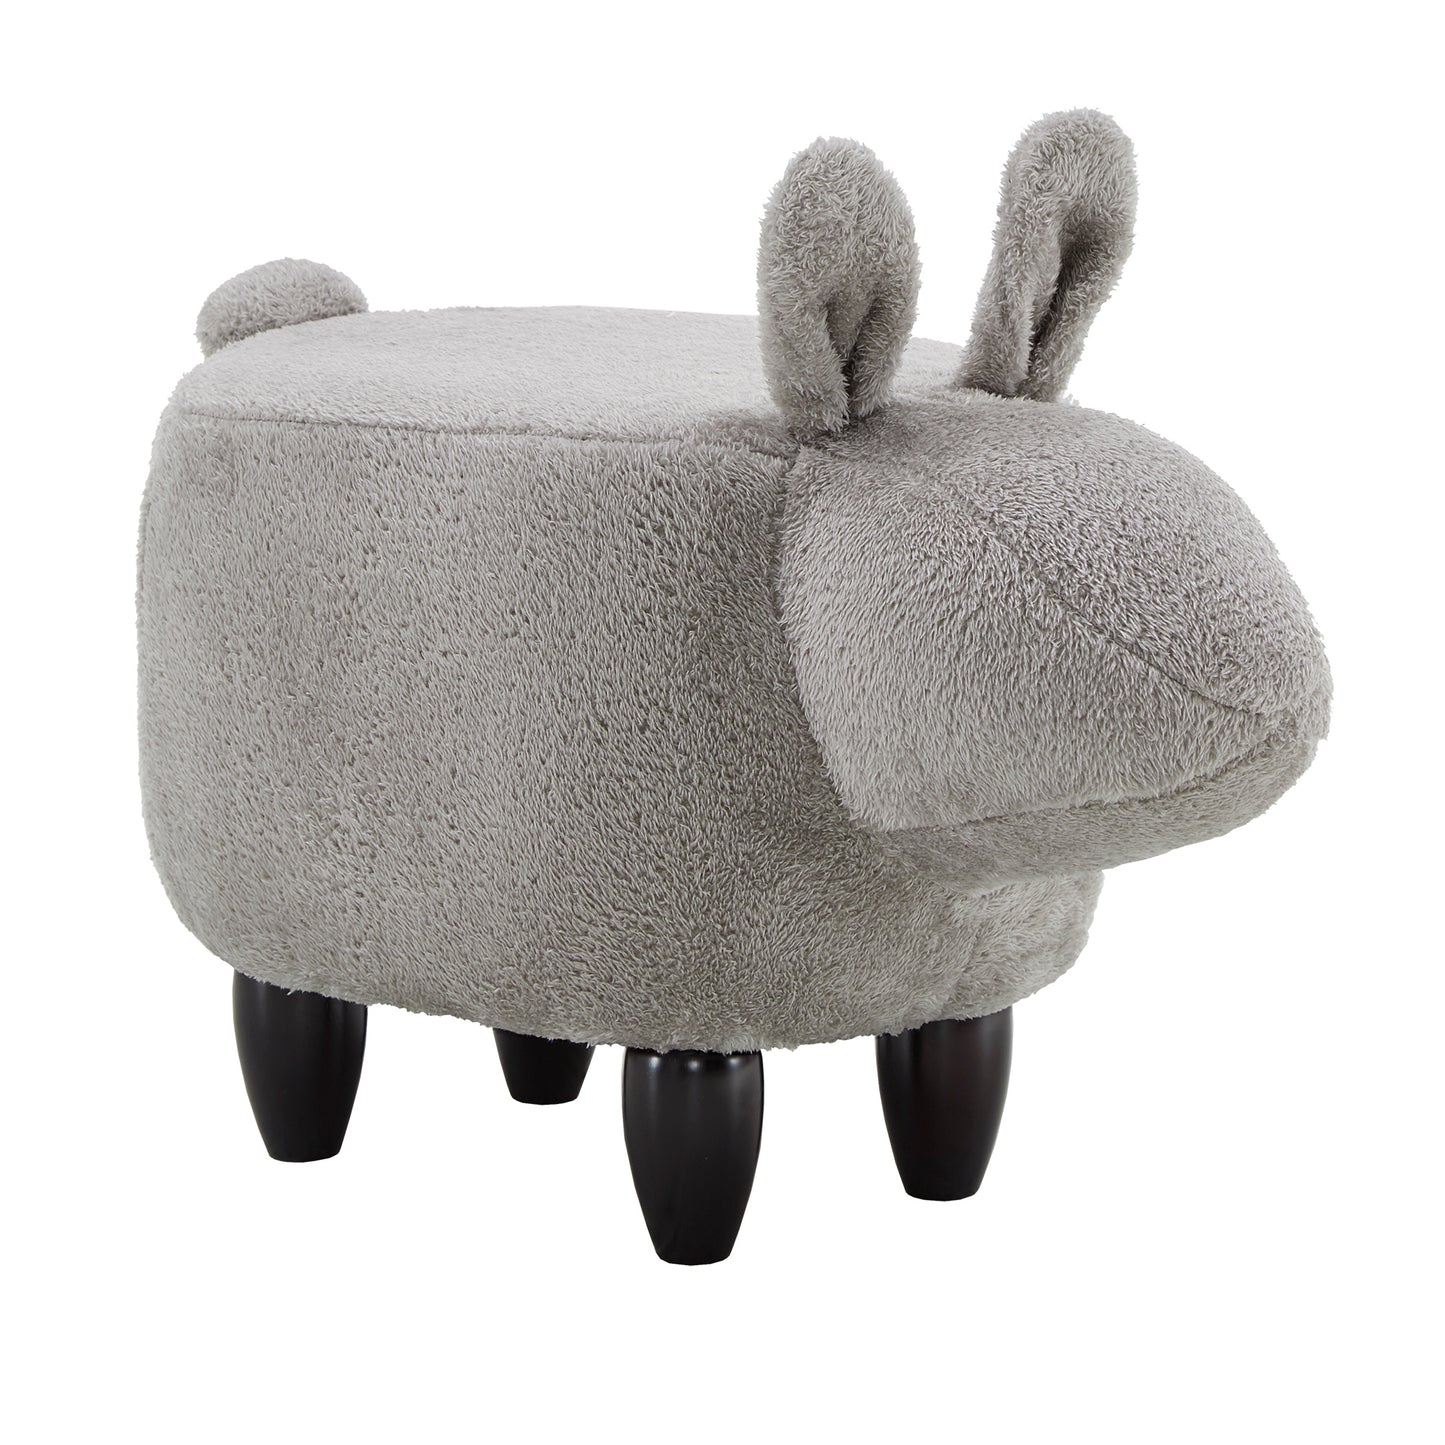 Animal Ottoman - Grey Rabbit